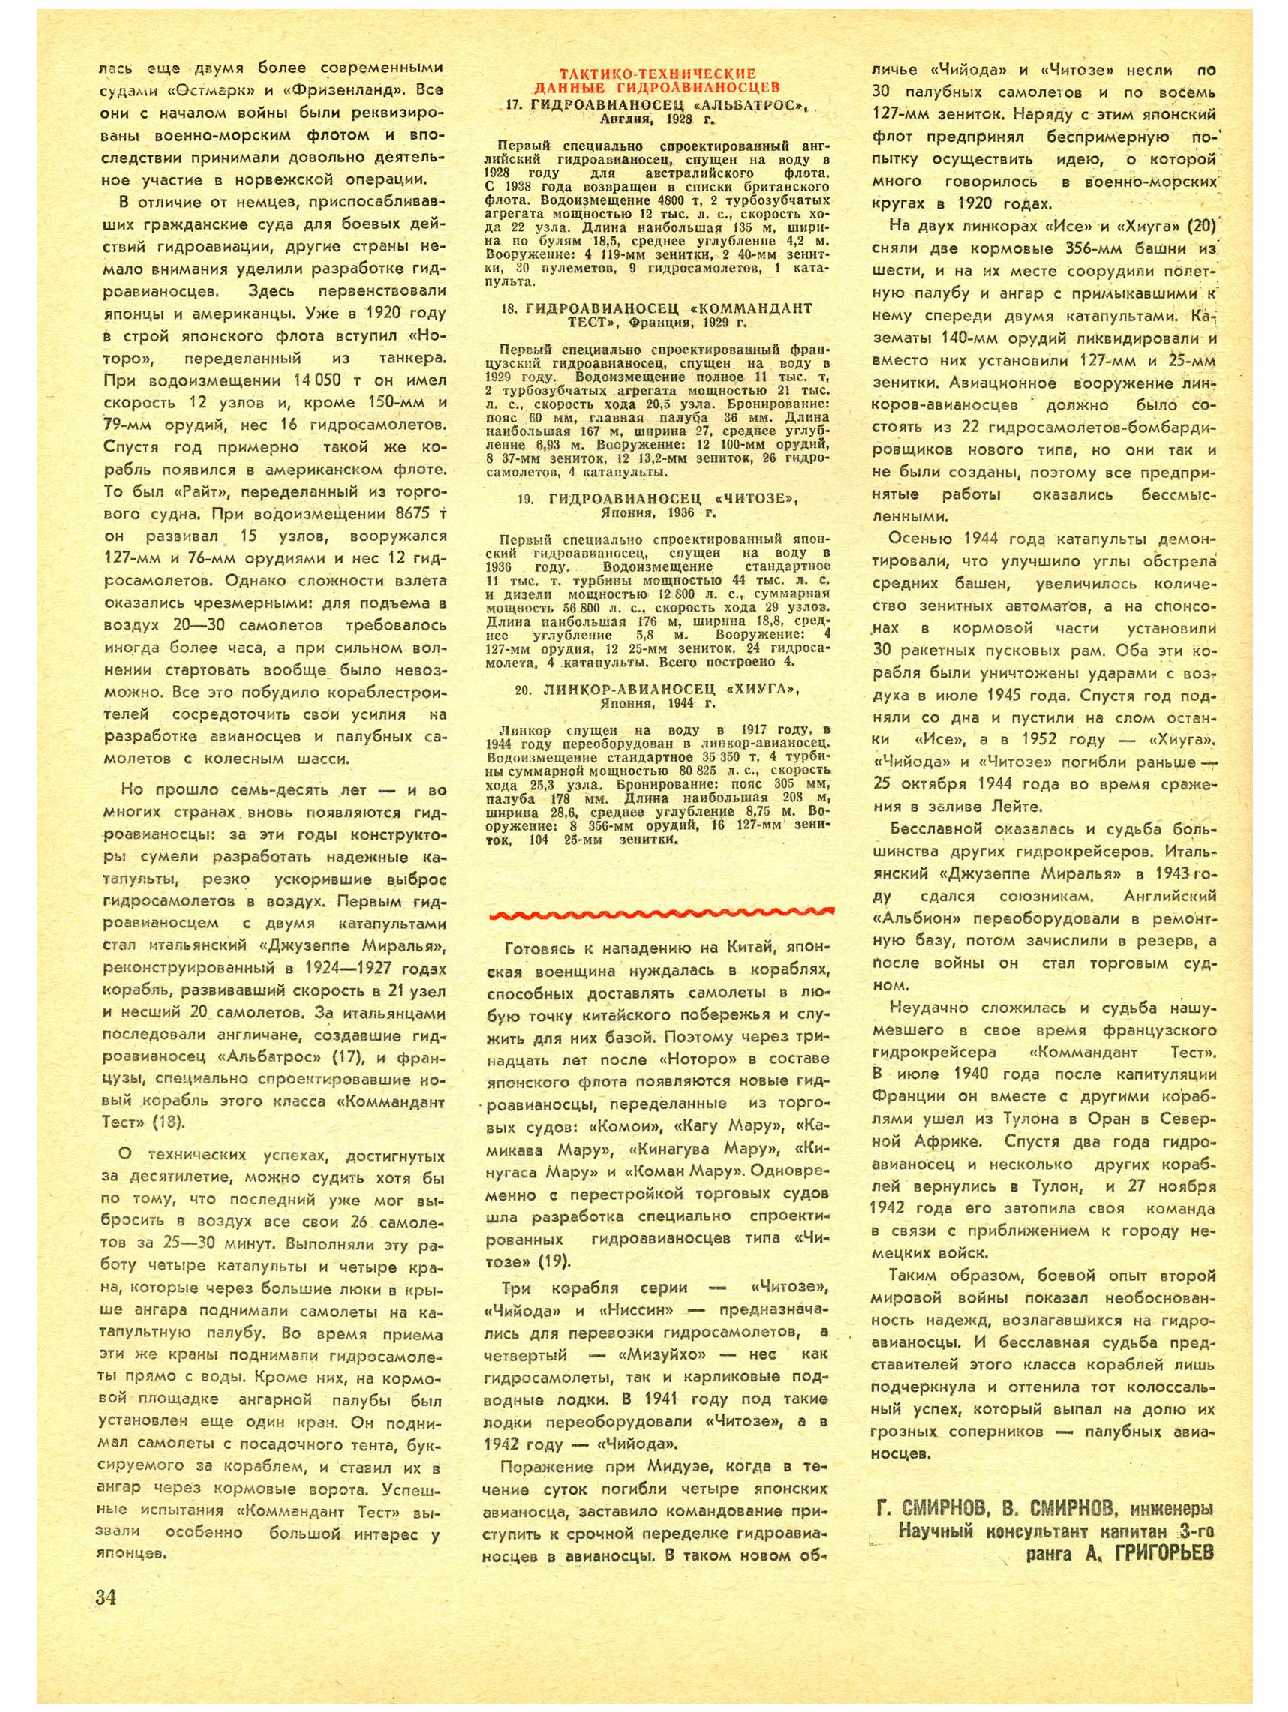 МК 5, 1982, 34 c.